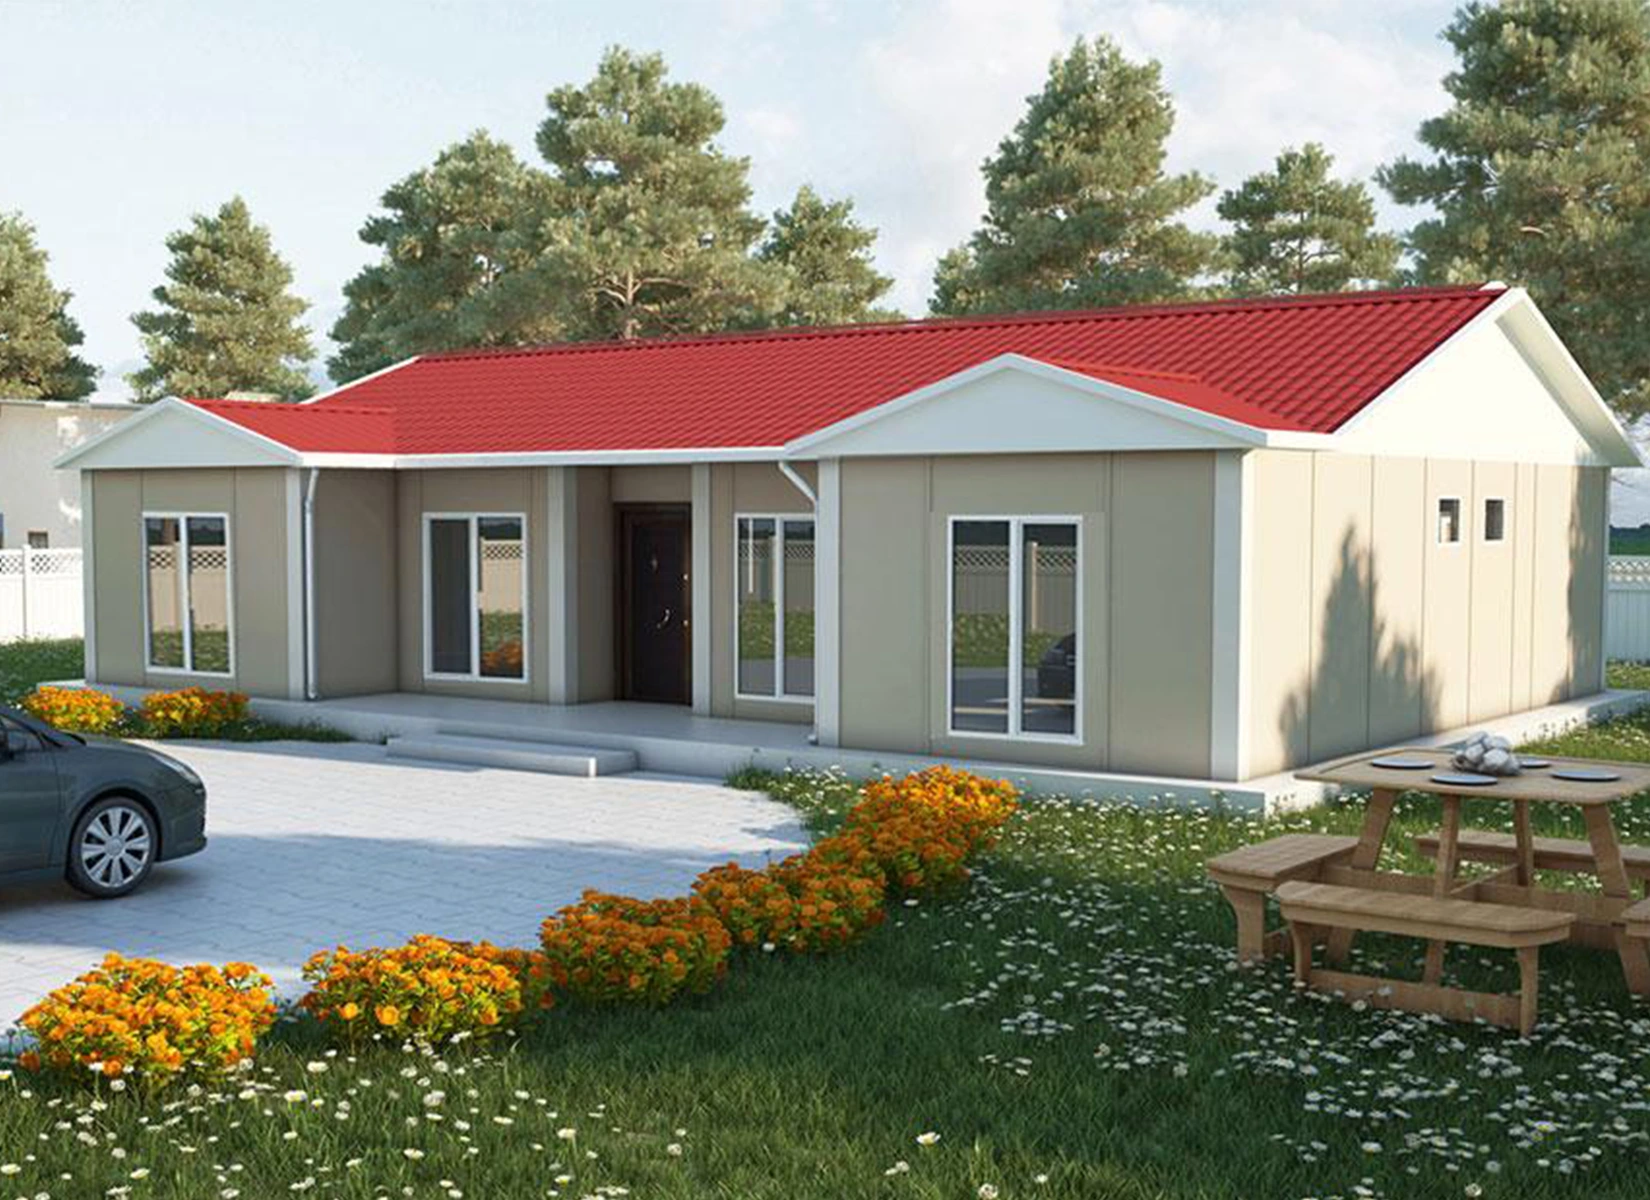 129 m² Tek Katlı Prefabrik Evler dincerler prefabrik ev ve güneş enerji sistemleri- Edirne-Keşan